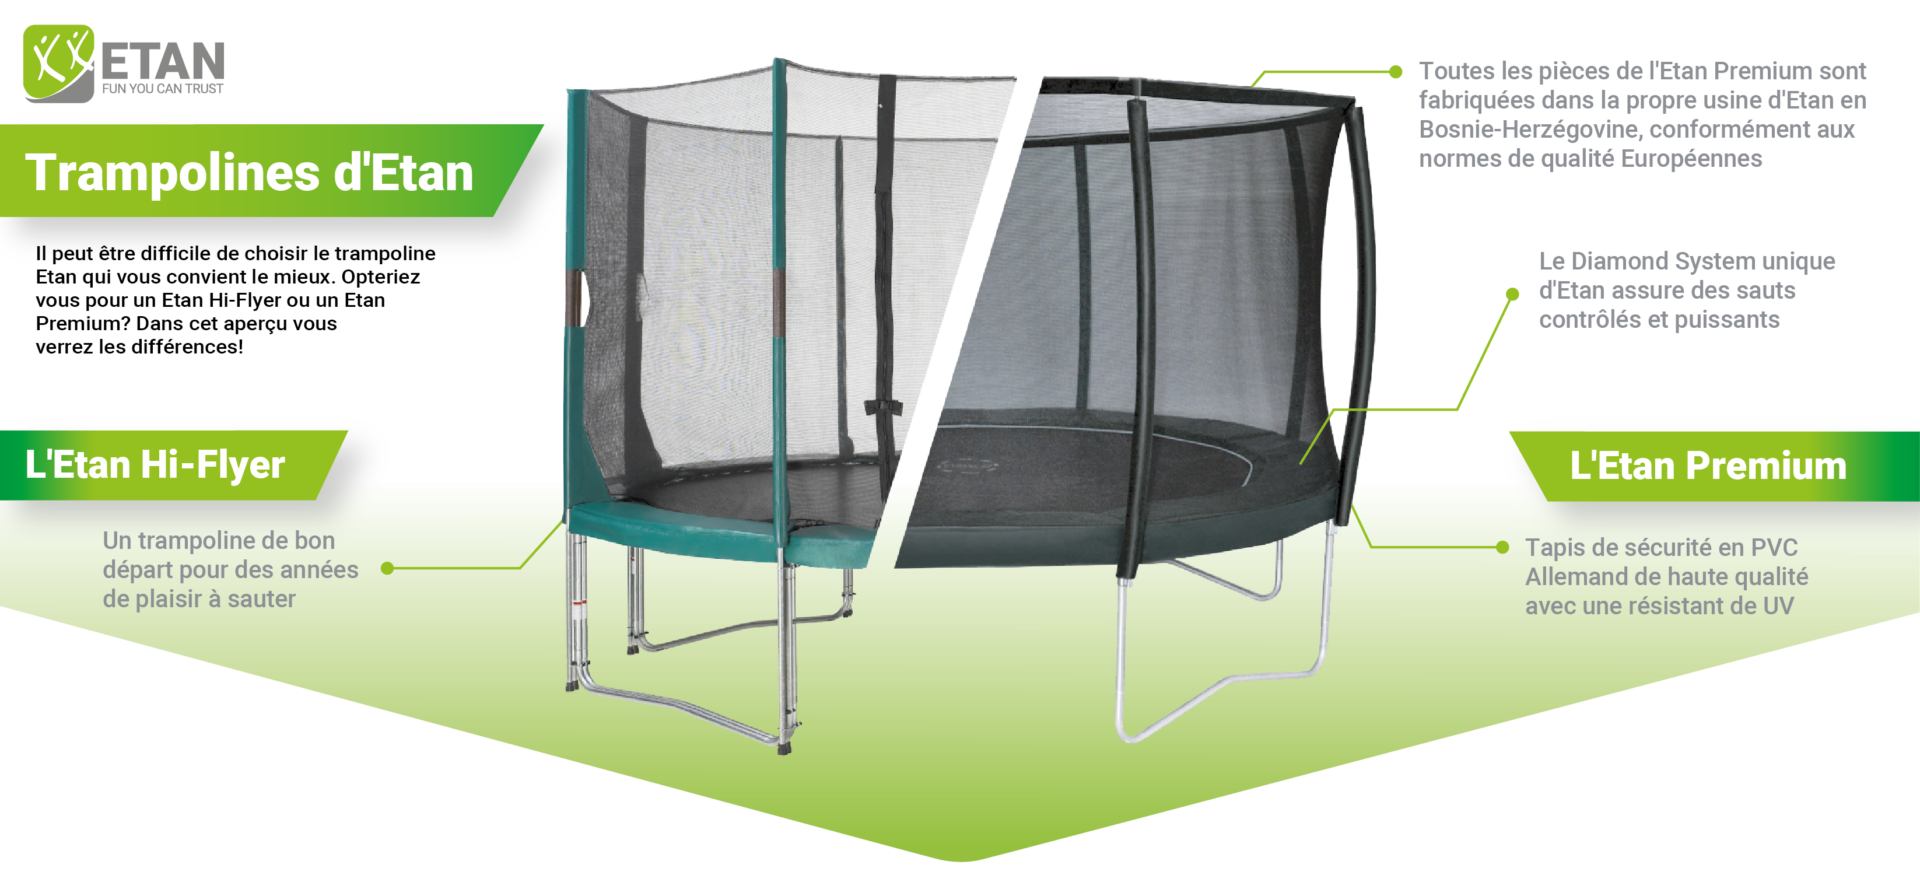 Différents trampolines Etan, Etan Hi-Flyer versus Etan Premium - Etan Trampolines